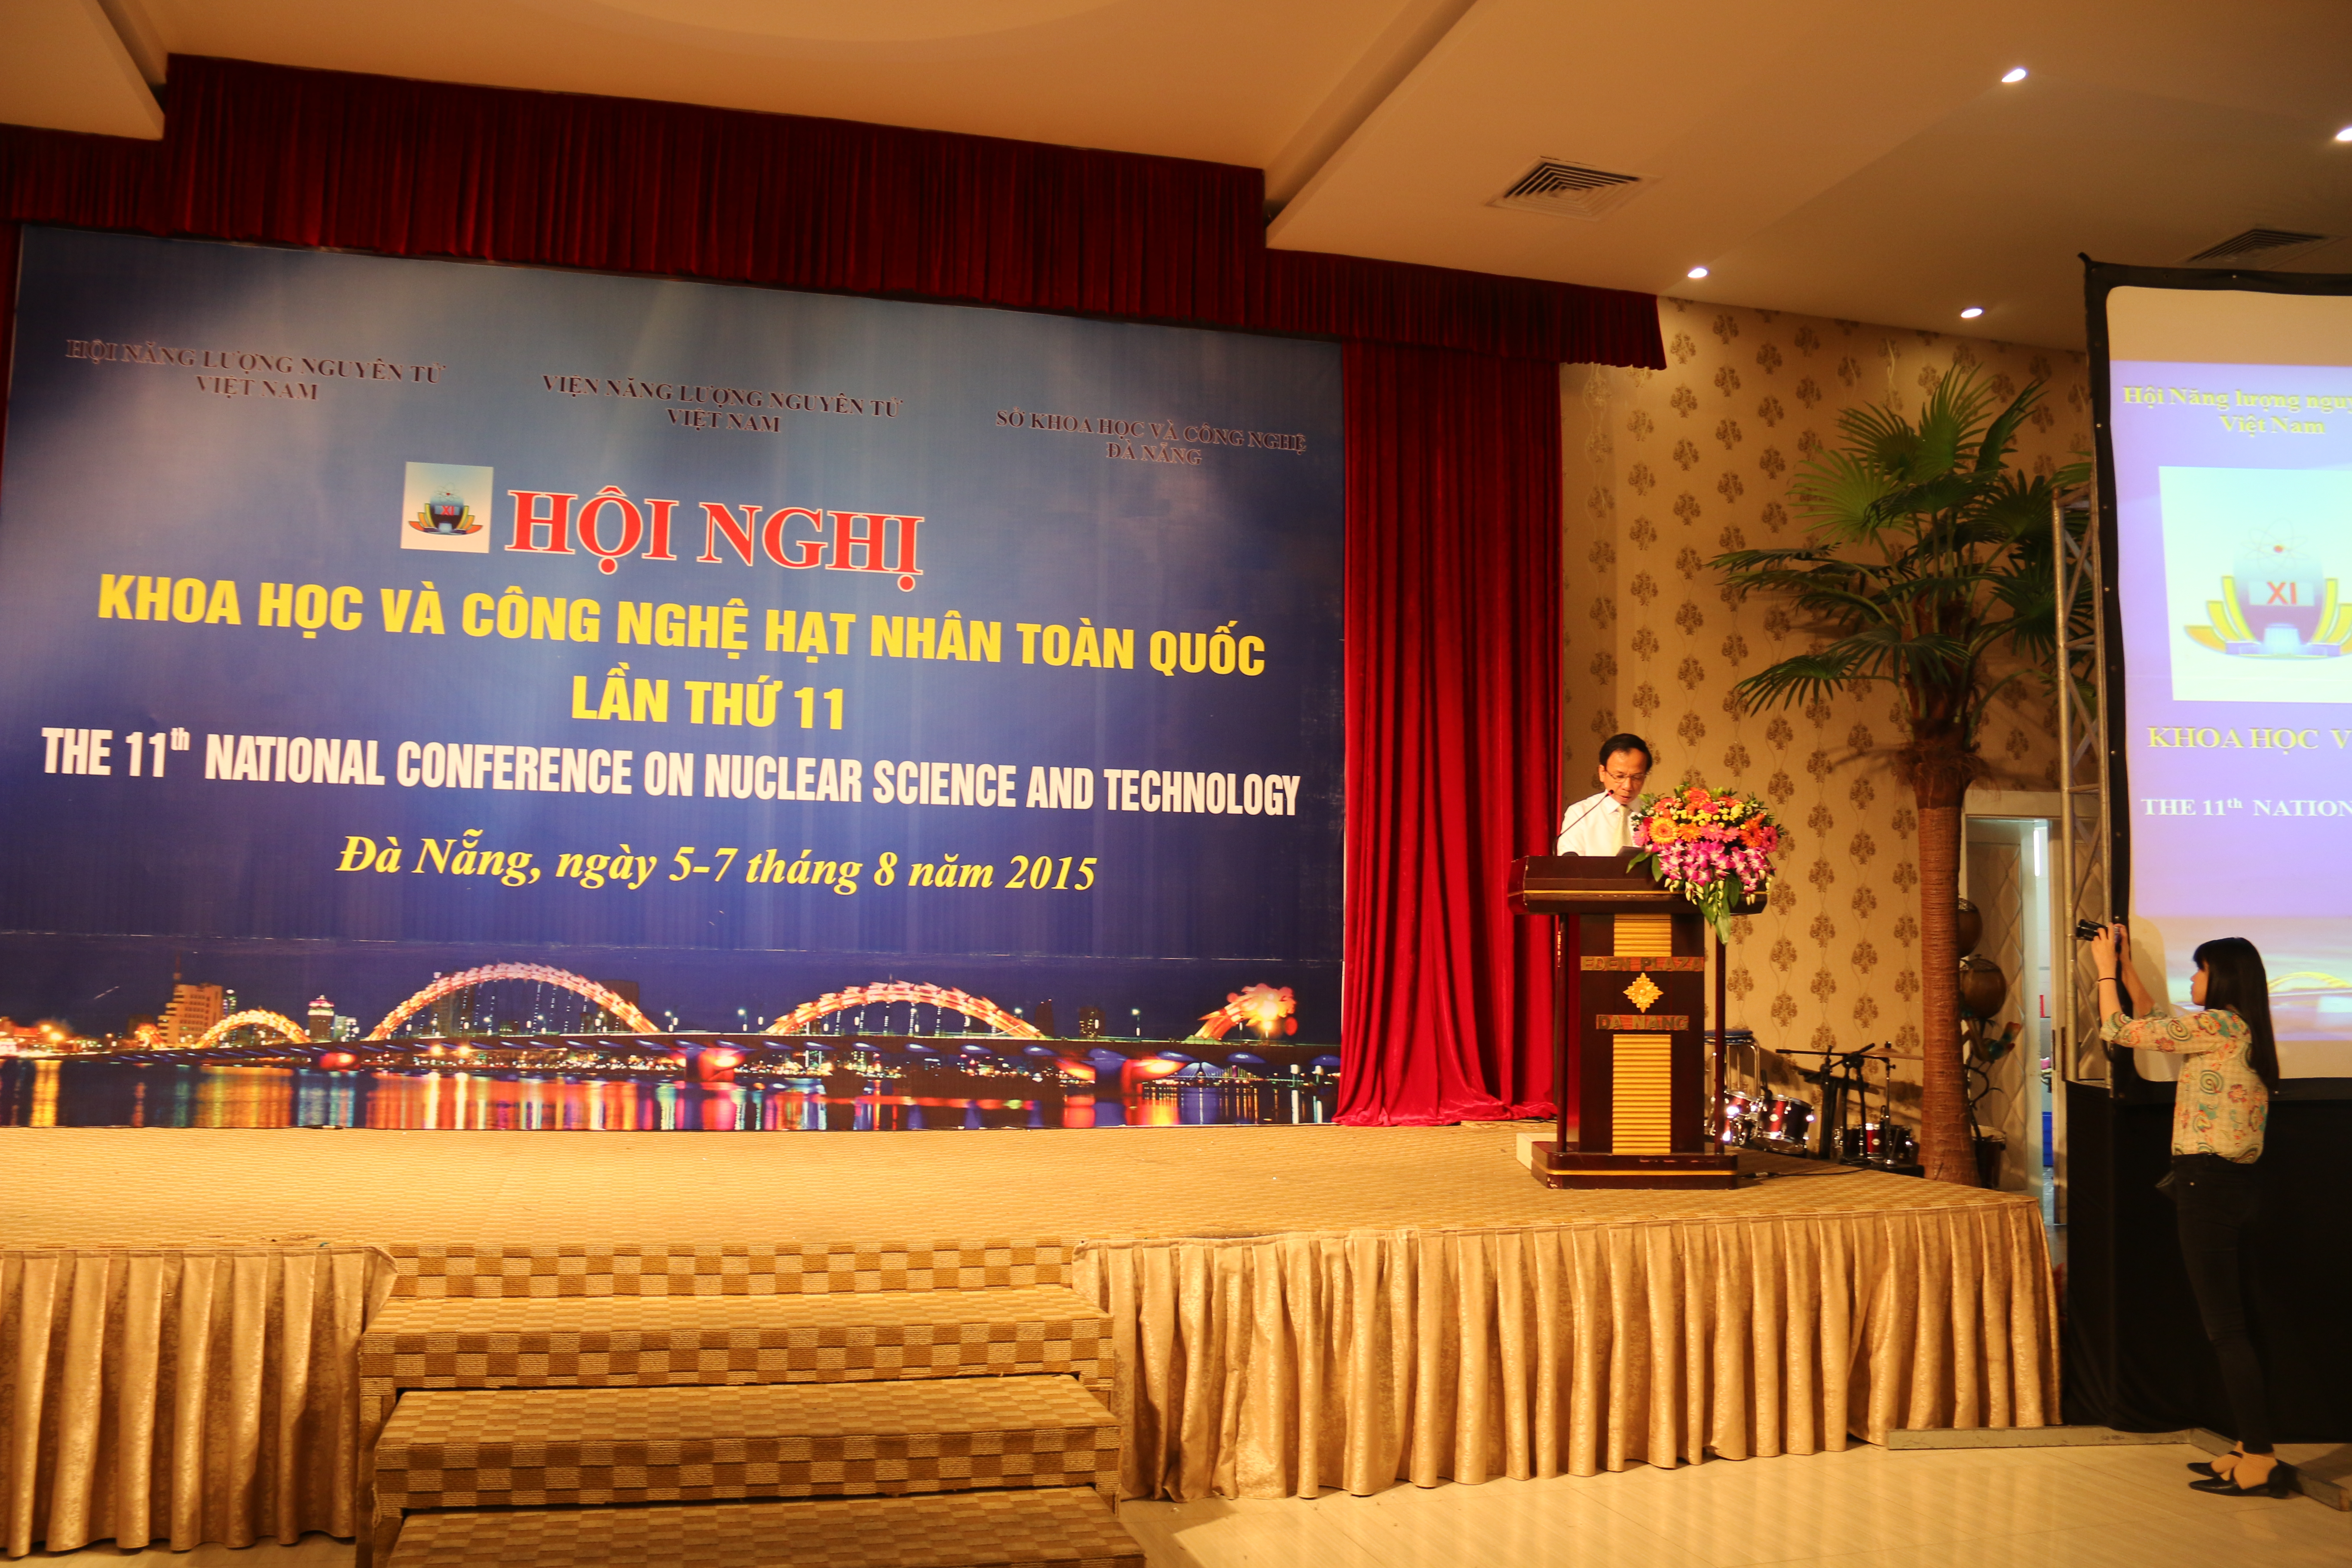 ội nghị khoa học và công nghệ hạt nhân toàn quốc lần thứ 11 đã diễn ra tại Đà Nẵng từ ngày 5-7/8